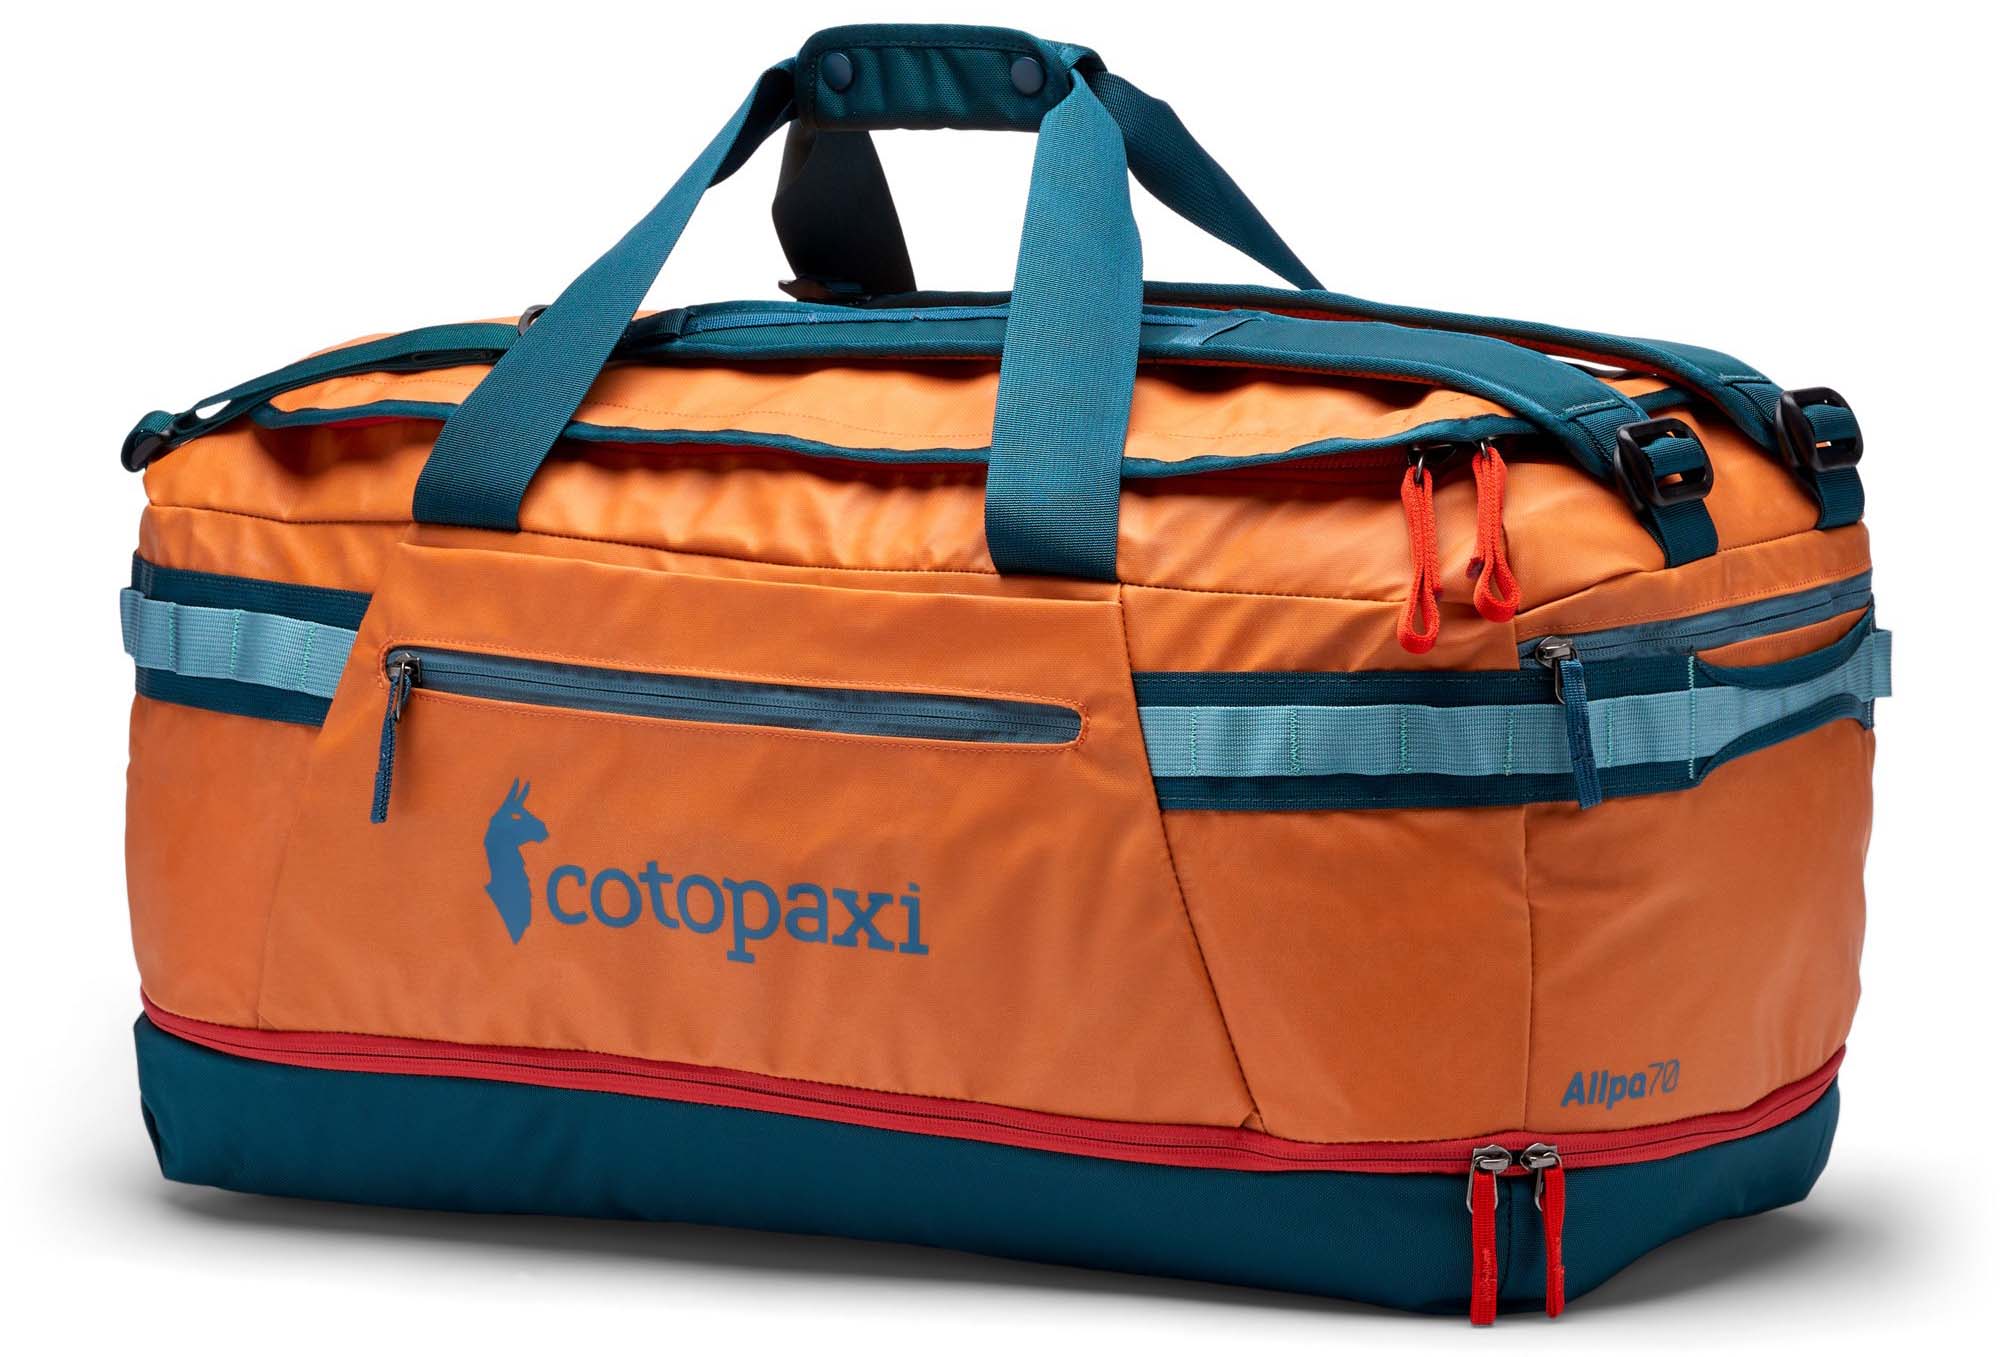 Cotopaxi Allpa 70L duffel bag